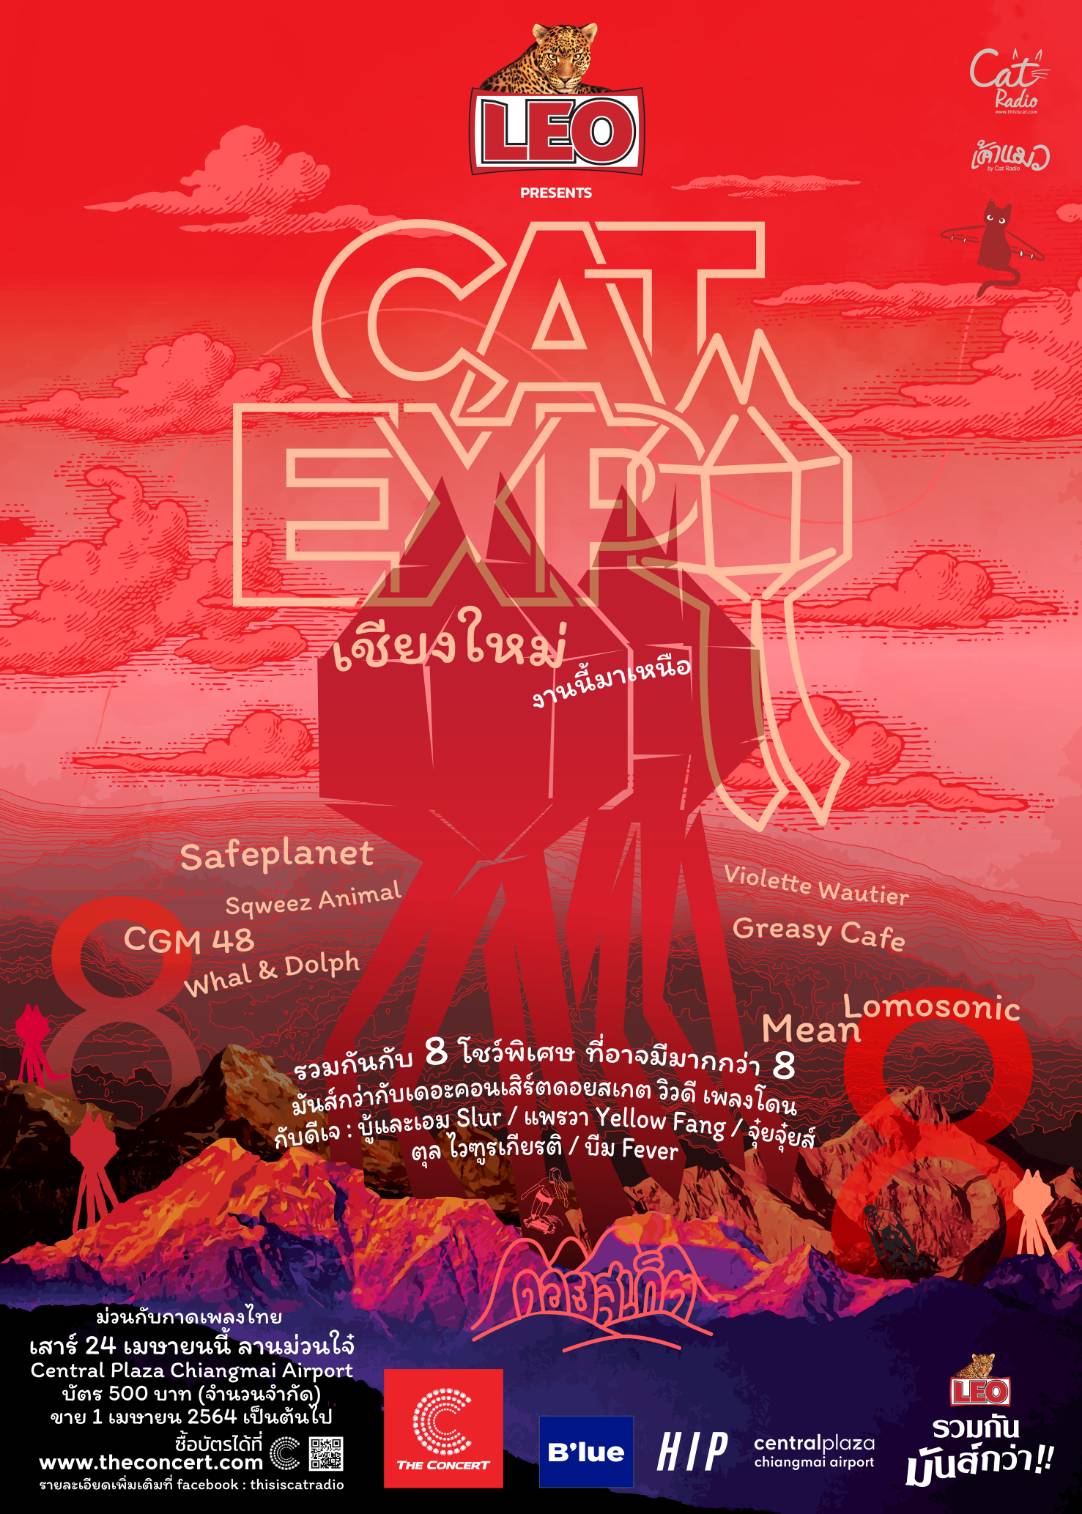 LEO presents Cat Expo เชียงใหม่ งานนี้มาเหนือ « หนังสือพิมพ์ภาคเหนือ